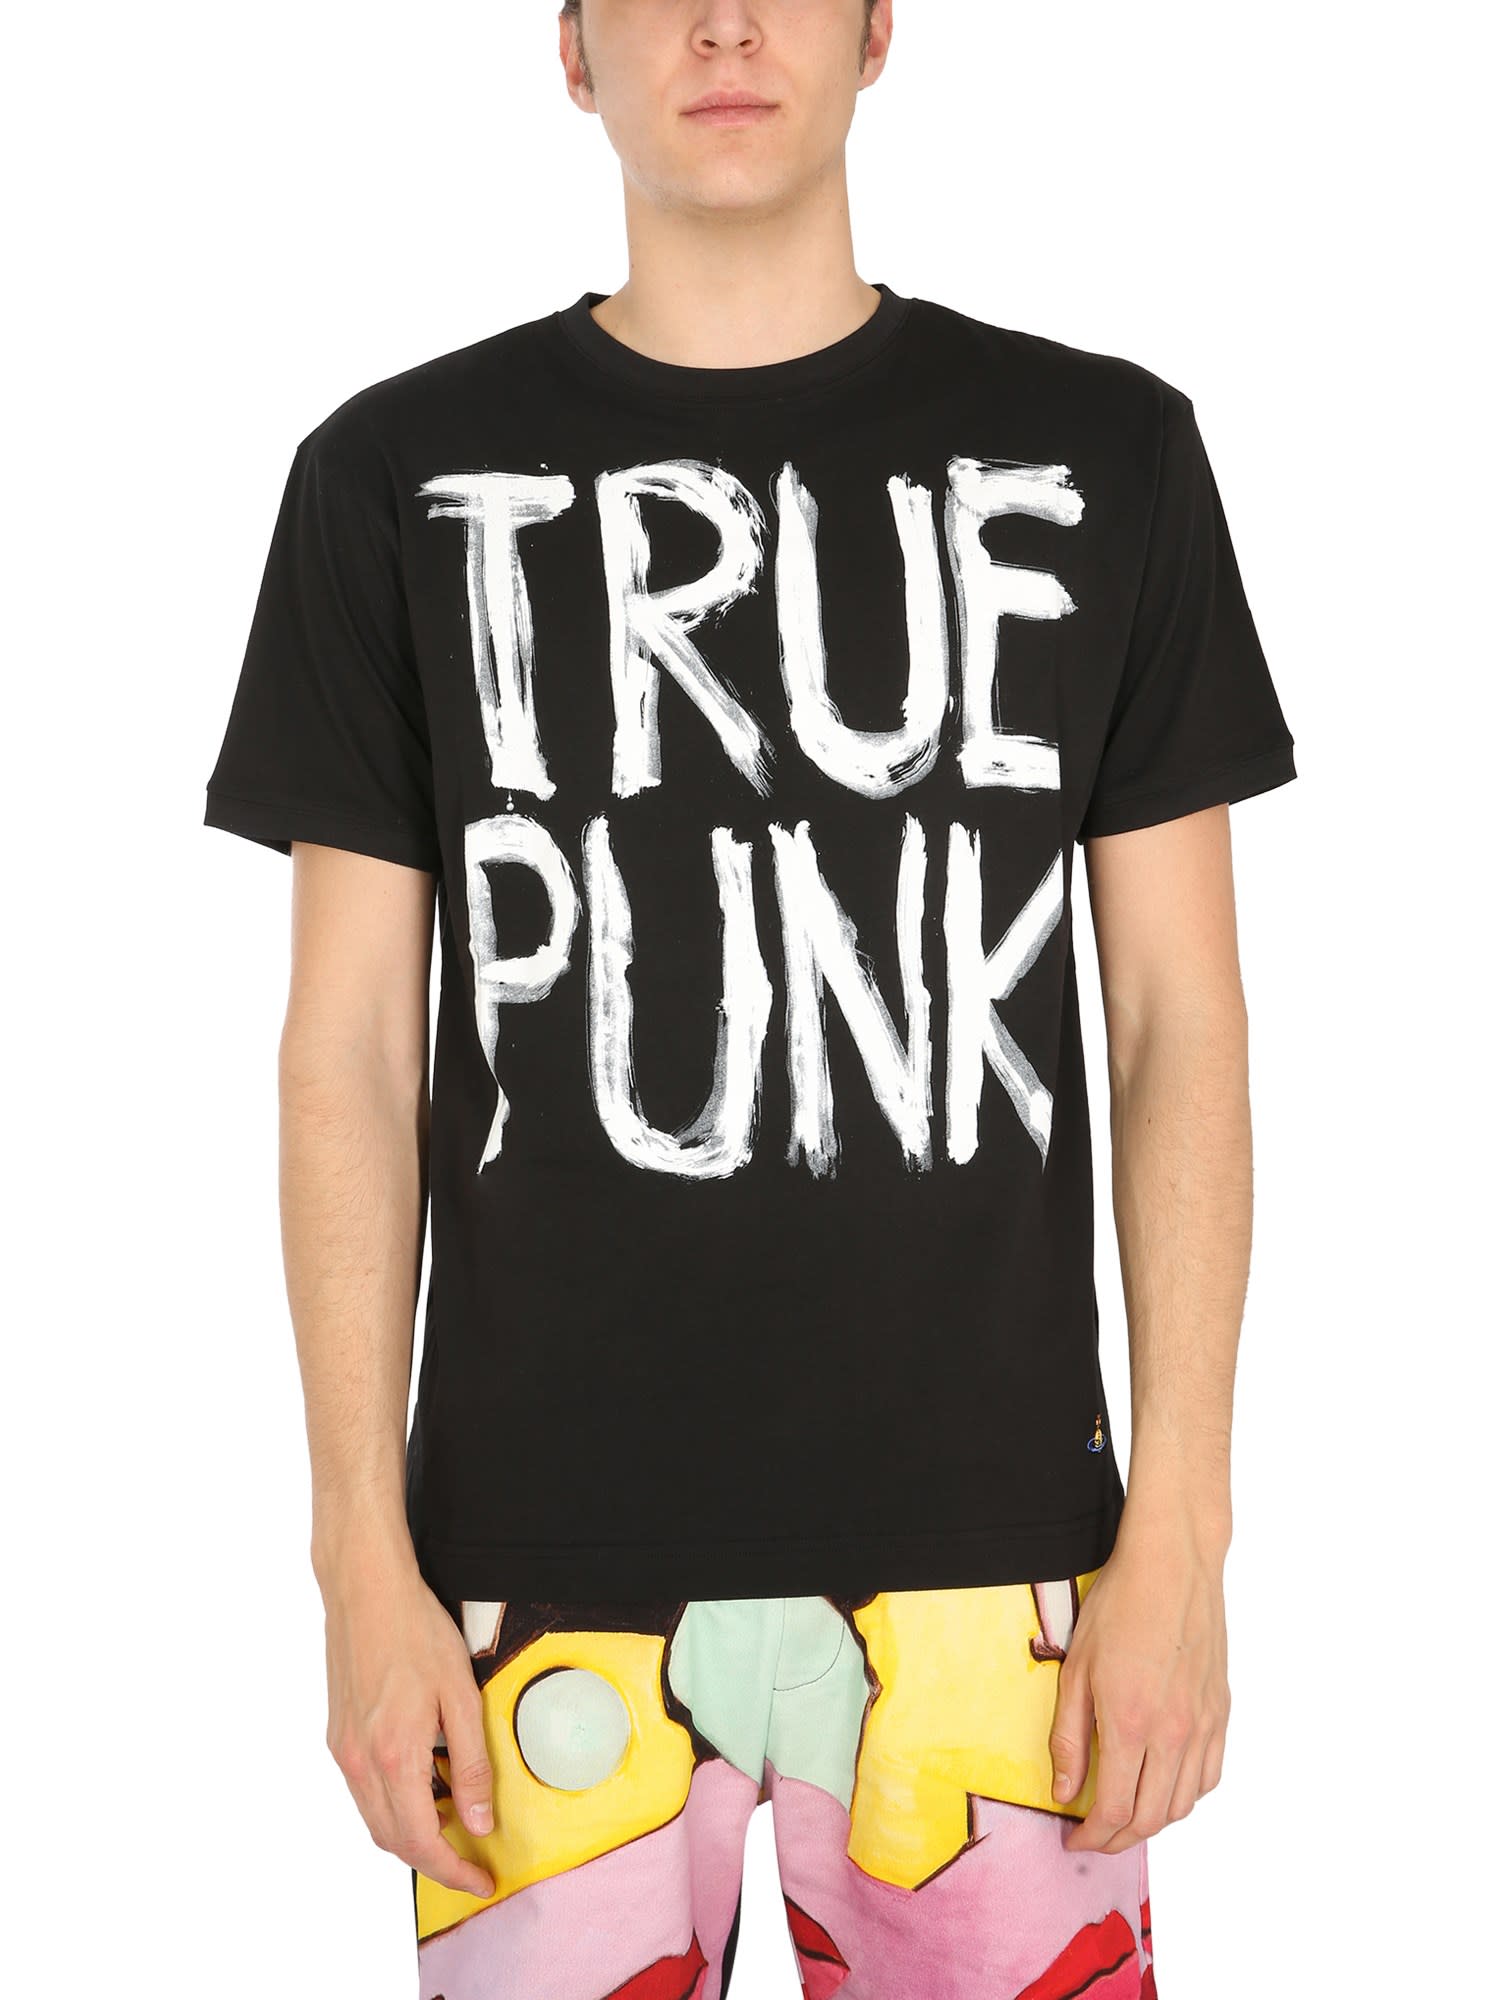 Vivienne Westwood Man Punk T-shirt